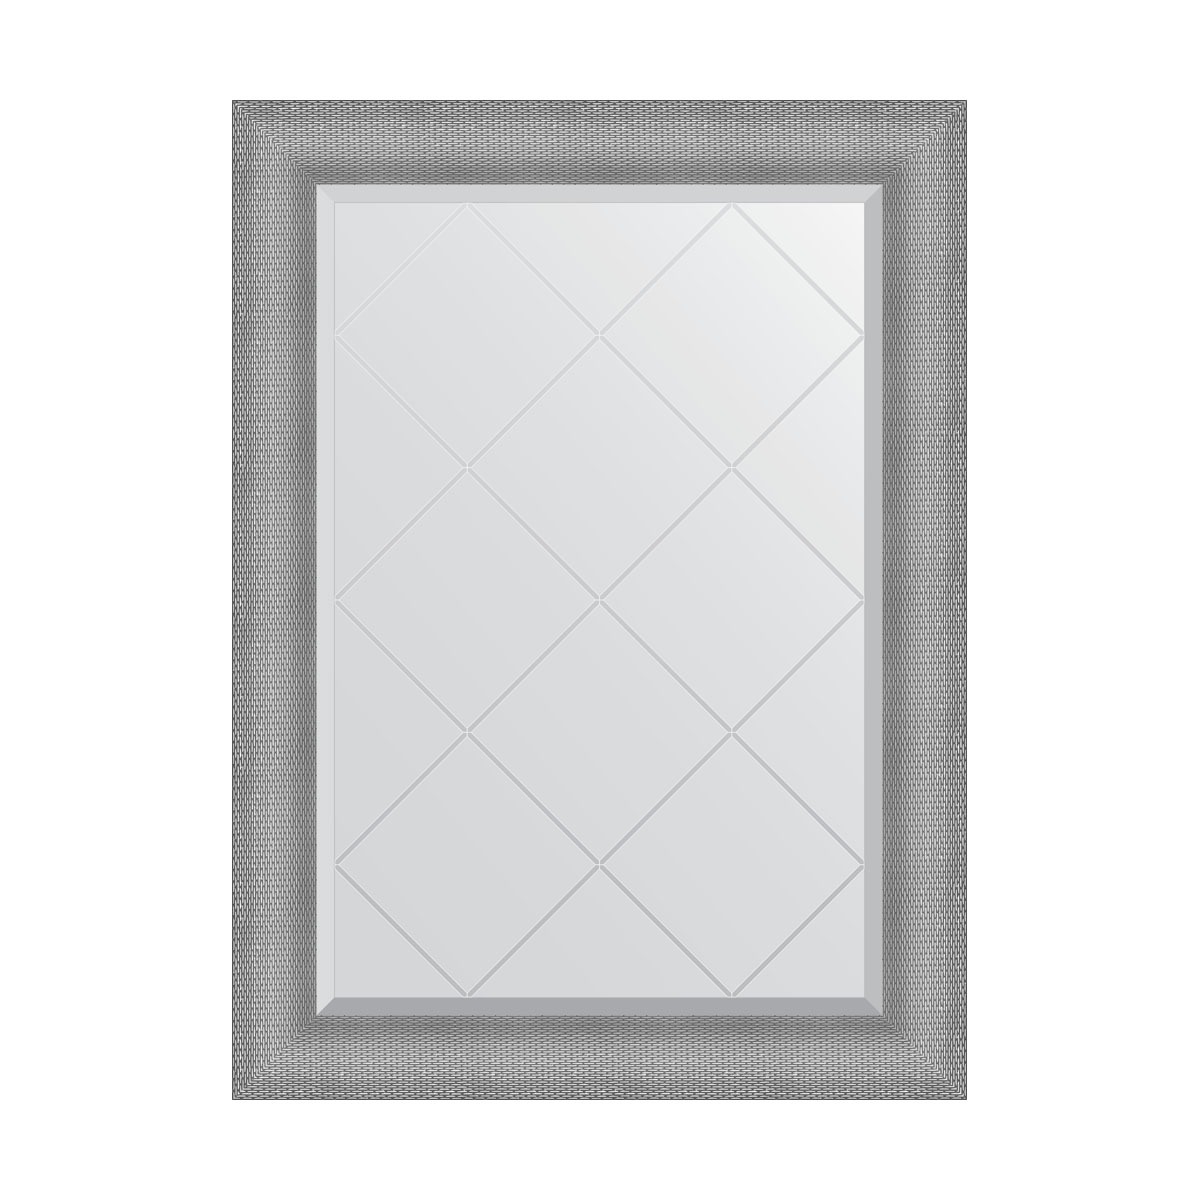 Зеркало с гравировкой в багетной раме Evoform серебряная кольчуга 88 мм 77x104 см зеркало с гравировкой в багетной раме evoform серебряная кольчуга 88 мм 132x187 см